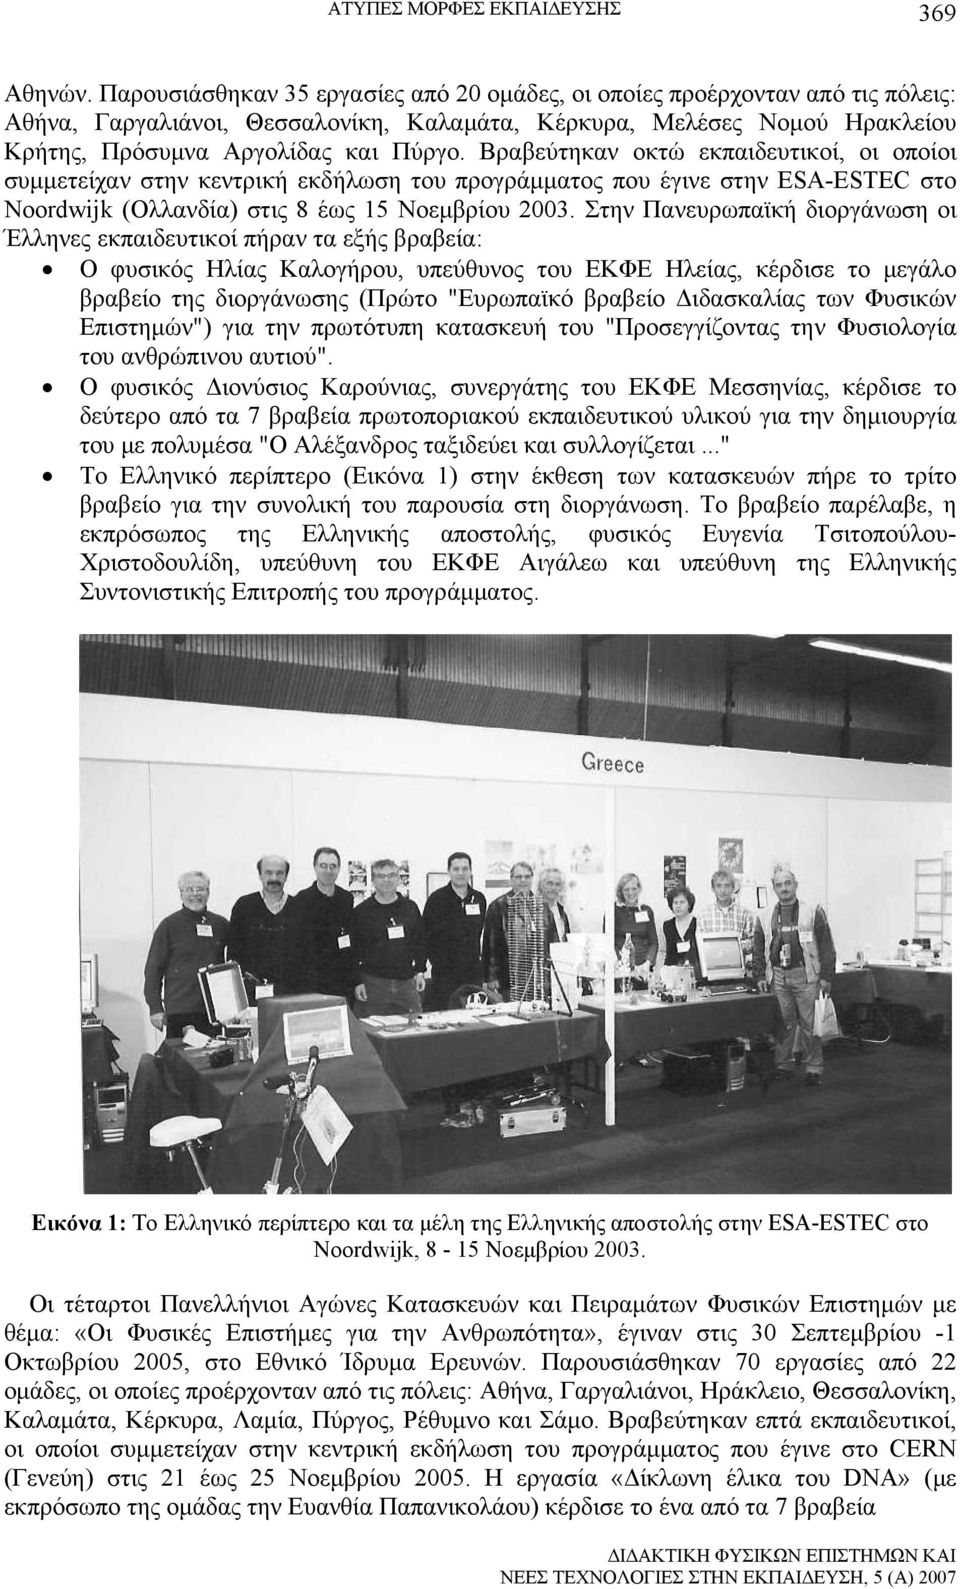 Βραβεύτηκαν οκτώ εκπαιδευτικοί, οι οποίοι συμμετείχαν στην κεντρική εκδήλωση του προγράμματος που έγινε στην ESA-ESTEC στο Noordwijk (Ολλανδία) στις 8 έως 15 Νοεμβρίου 2003.